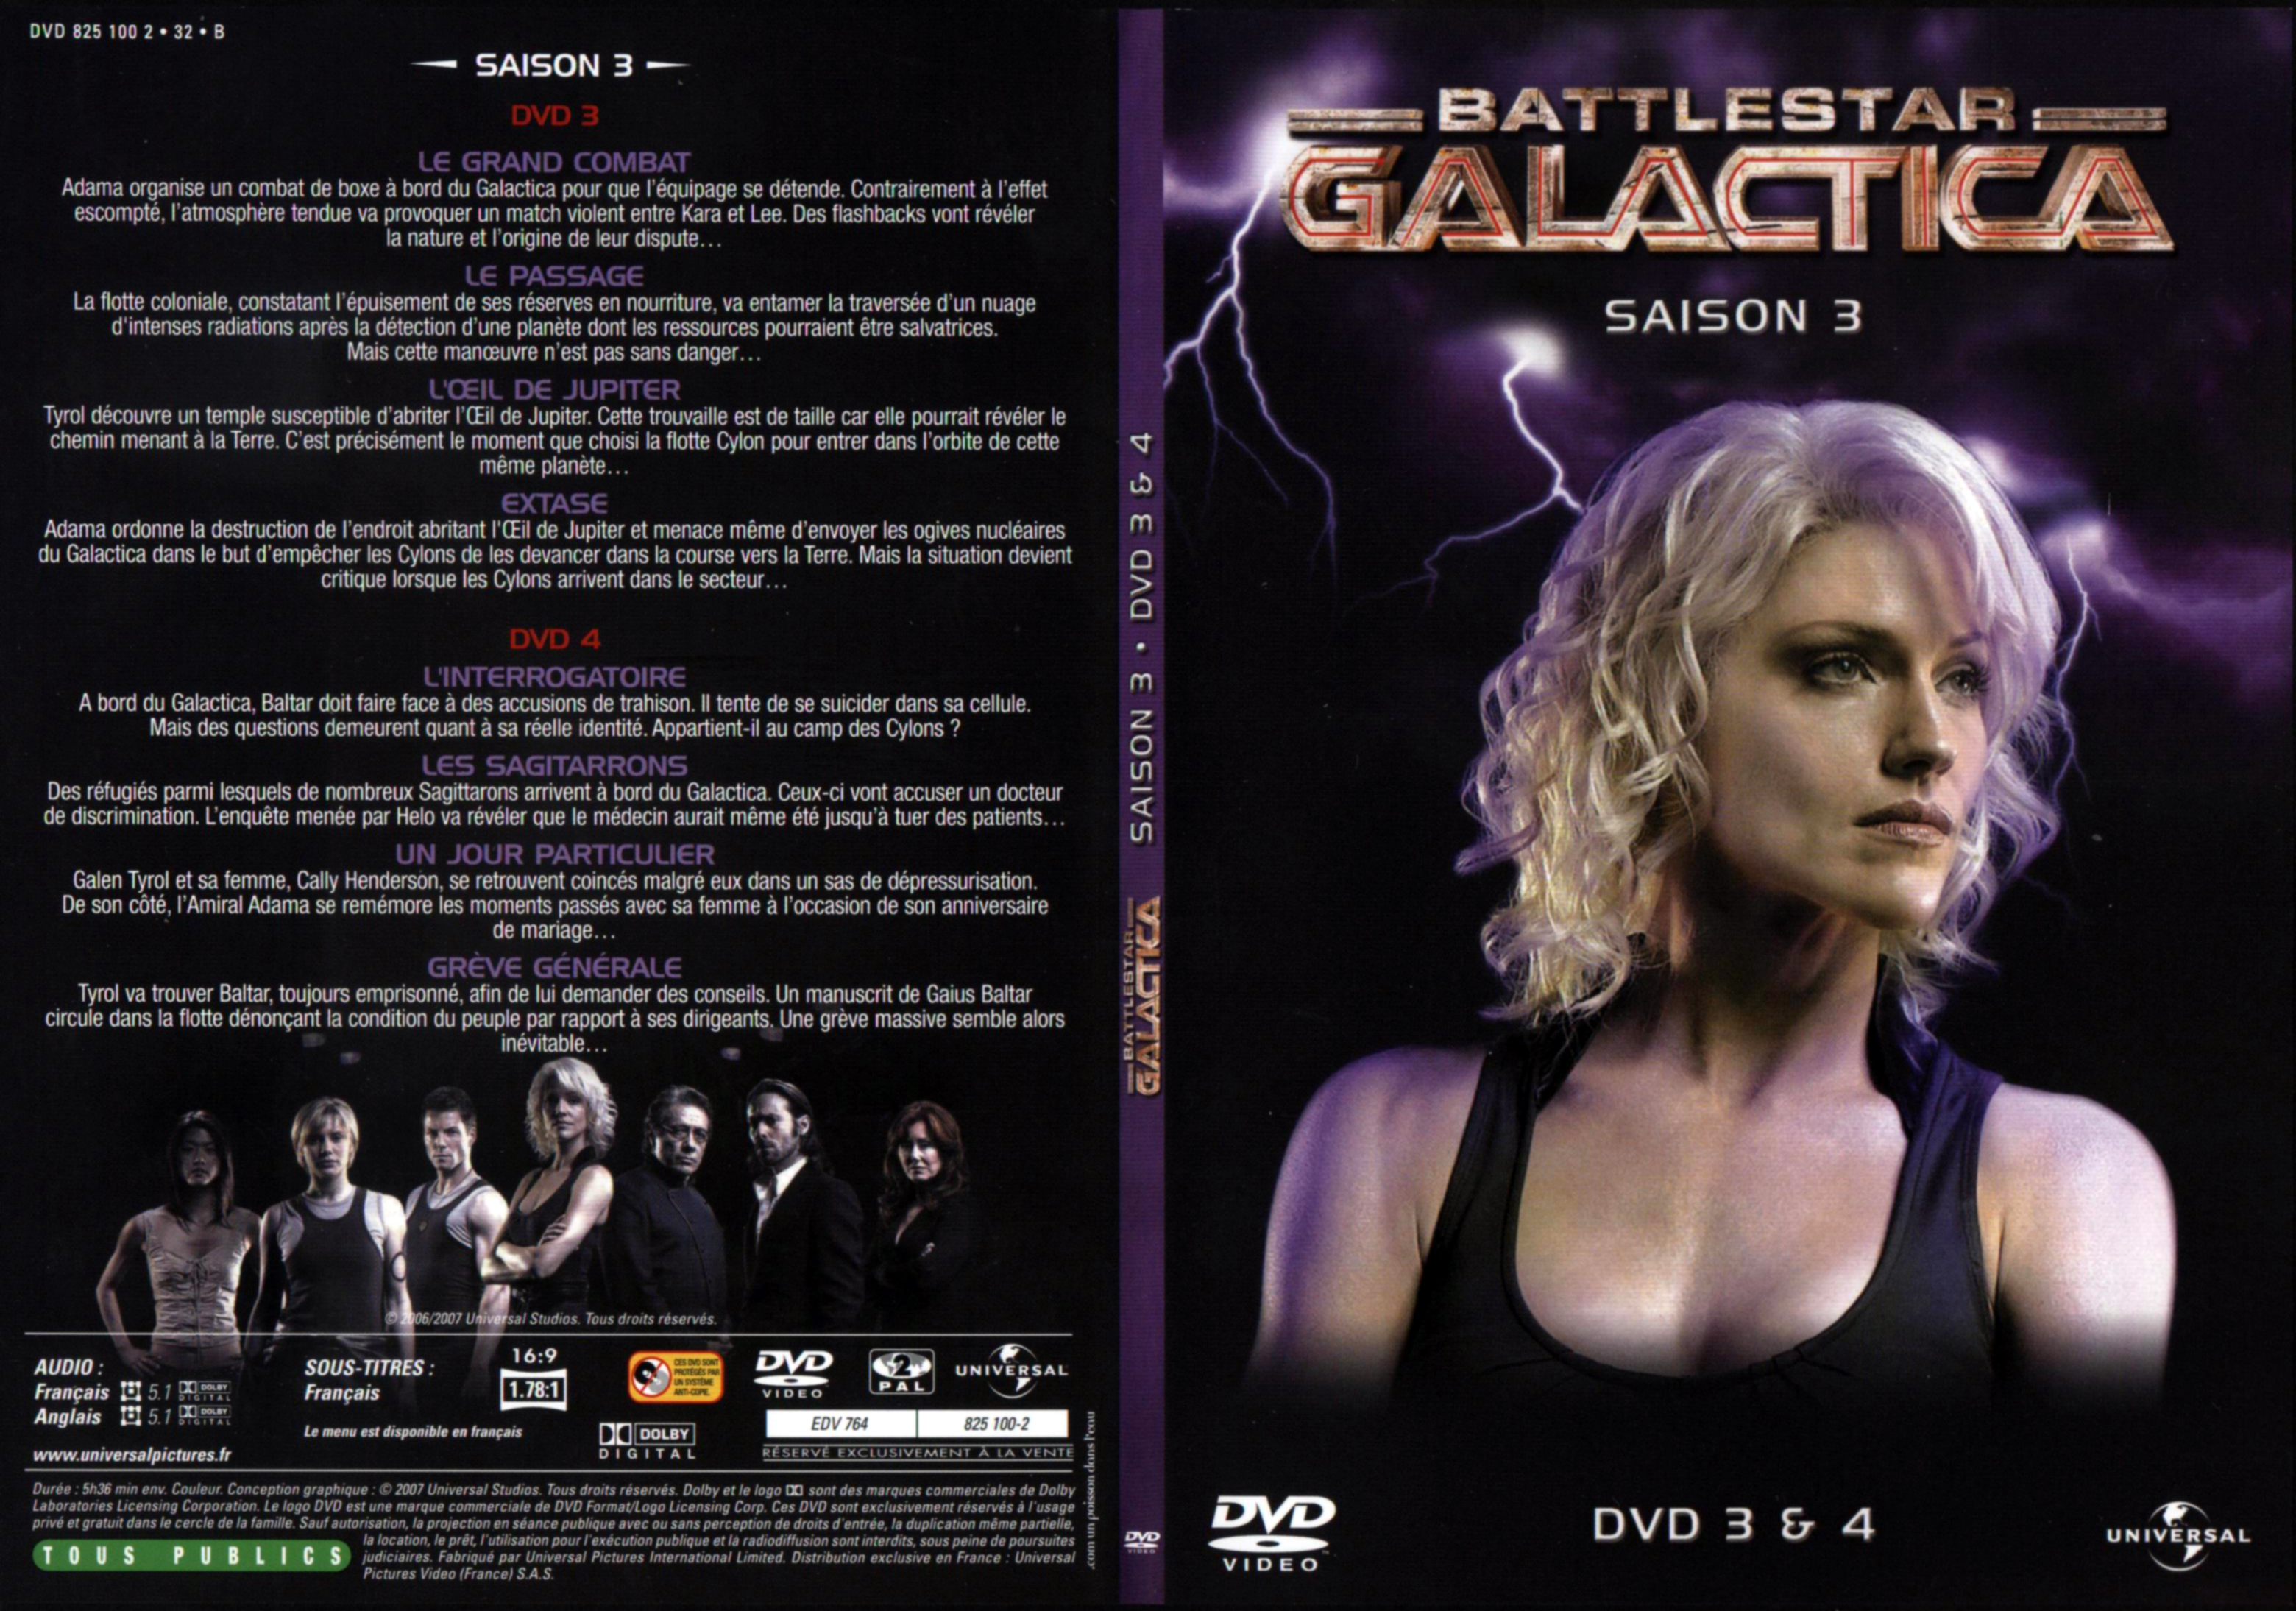 Jaquette DVD Battlestar Galactica Saison 3 DVD 2.